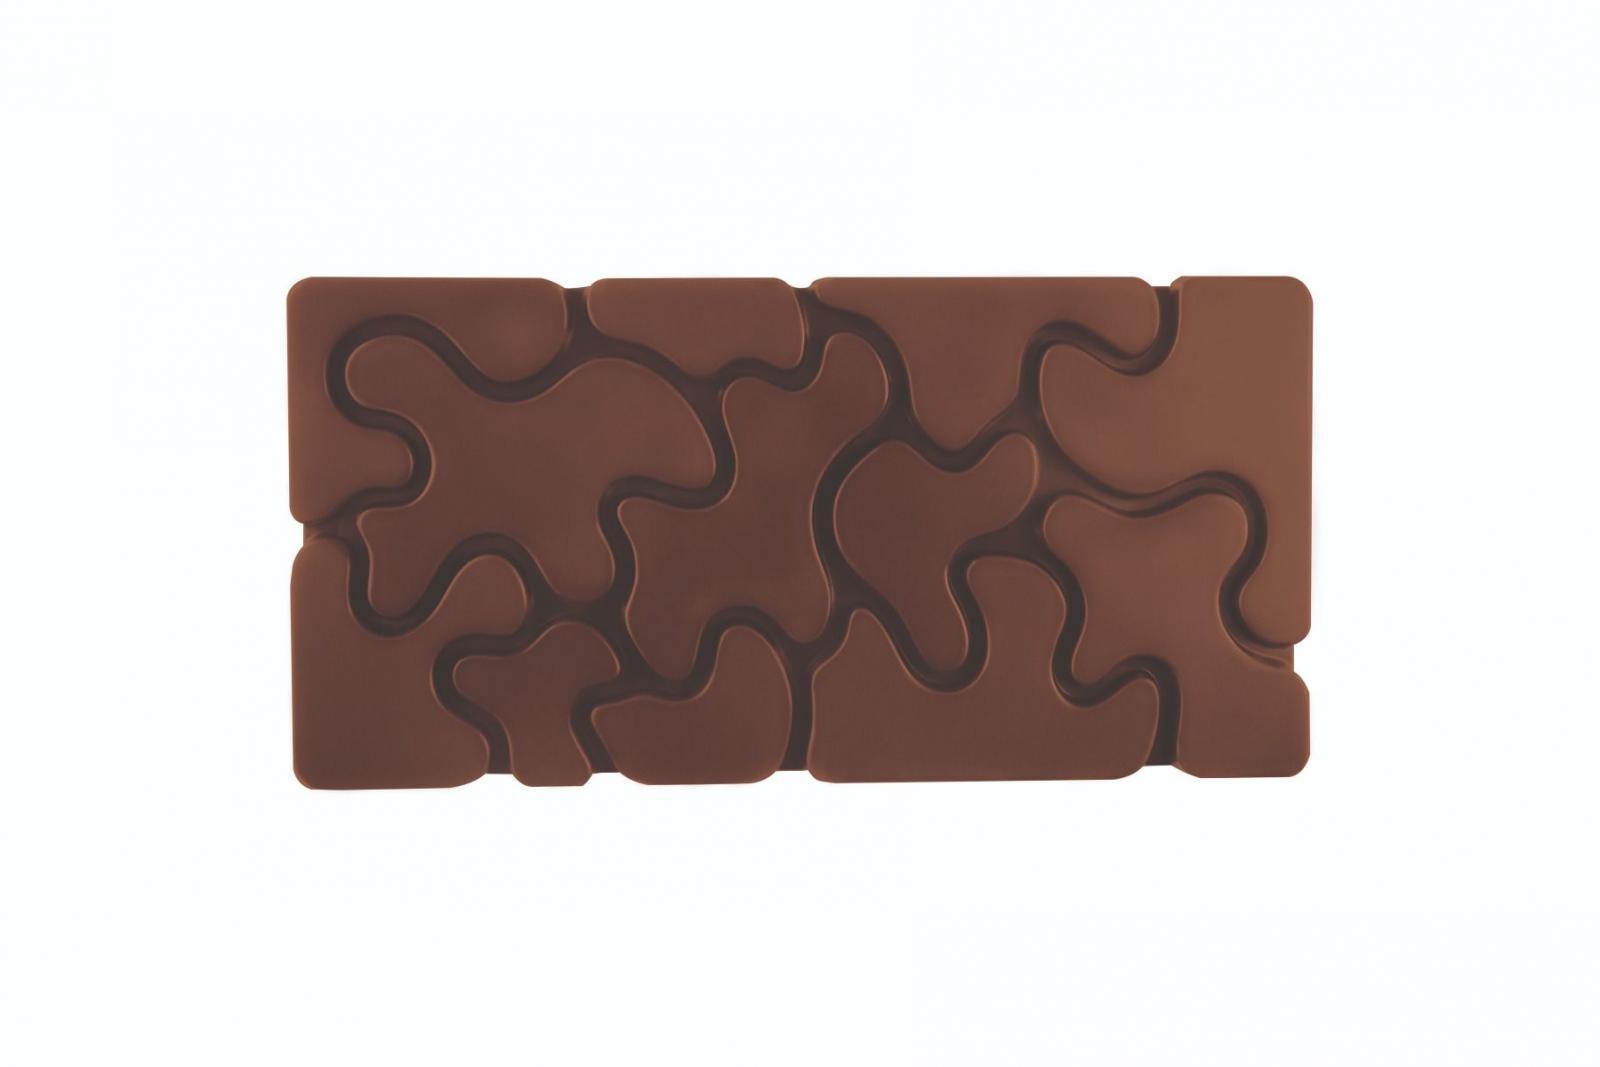 Polykarbonátová forma na tabuľkovú čokoládu Camouflage od F. Fiorani, 275x175 mm -  PAVONI